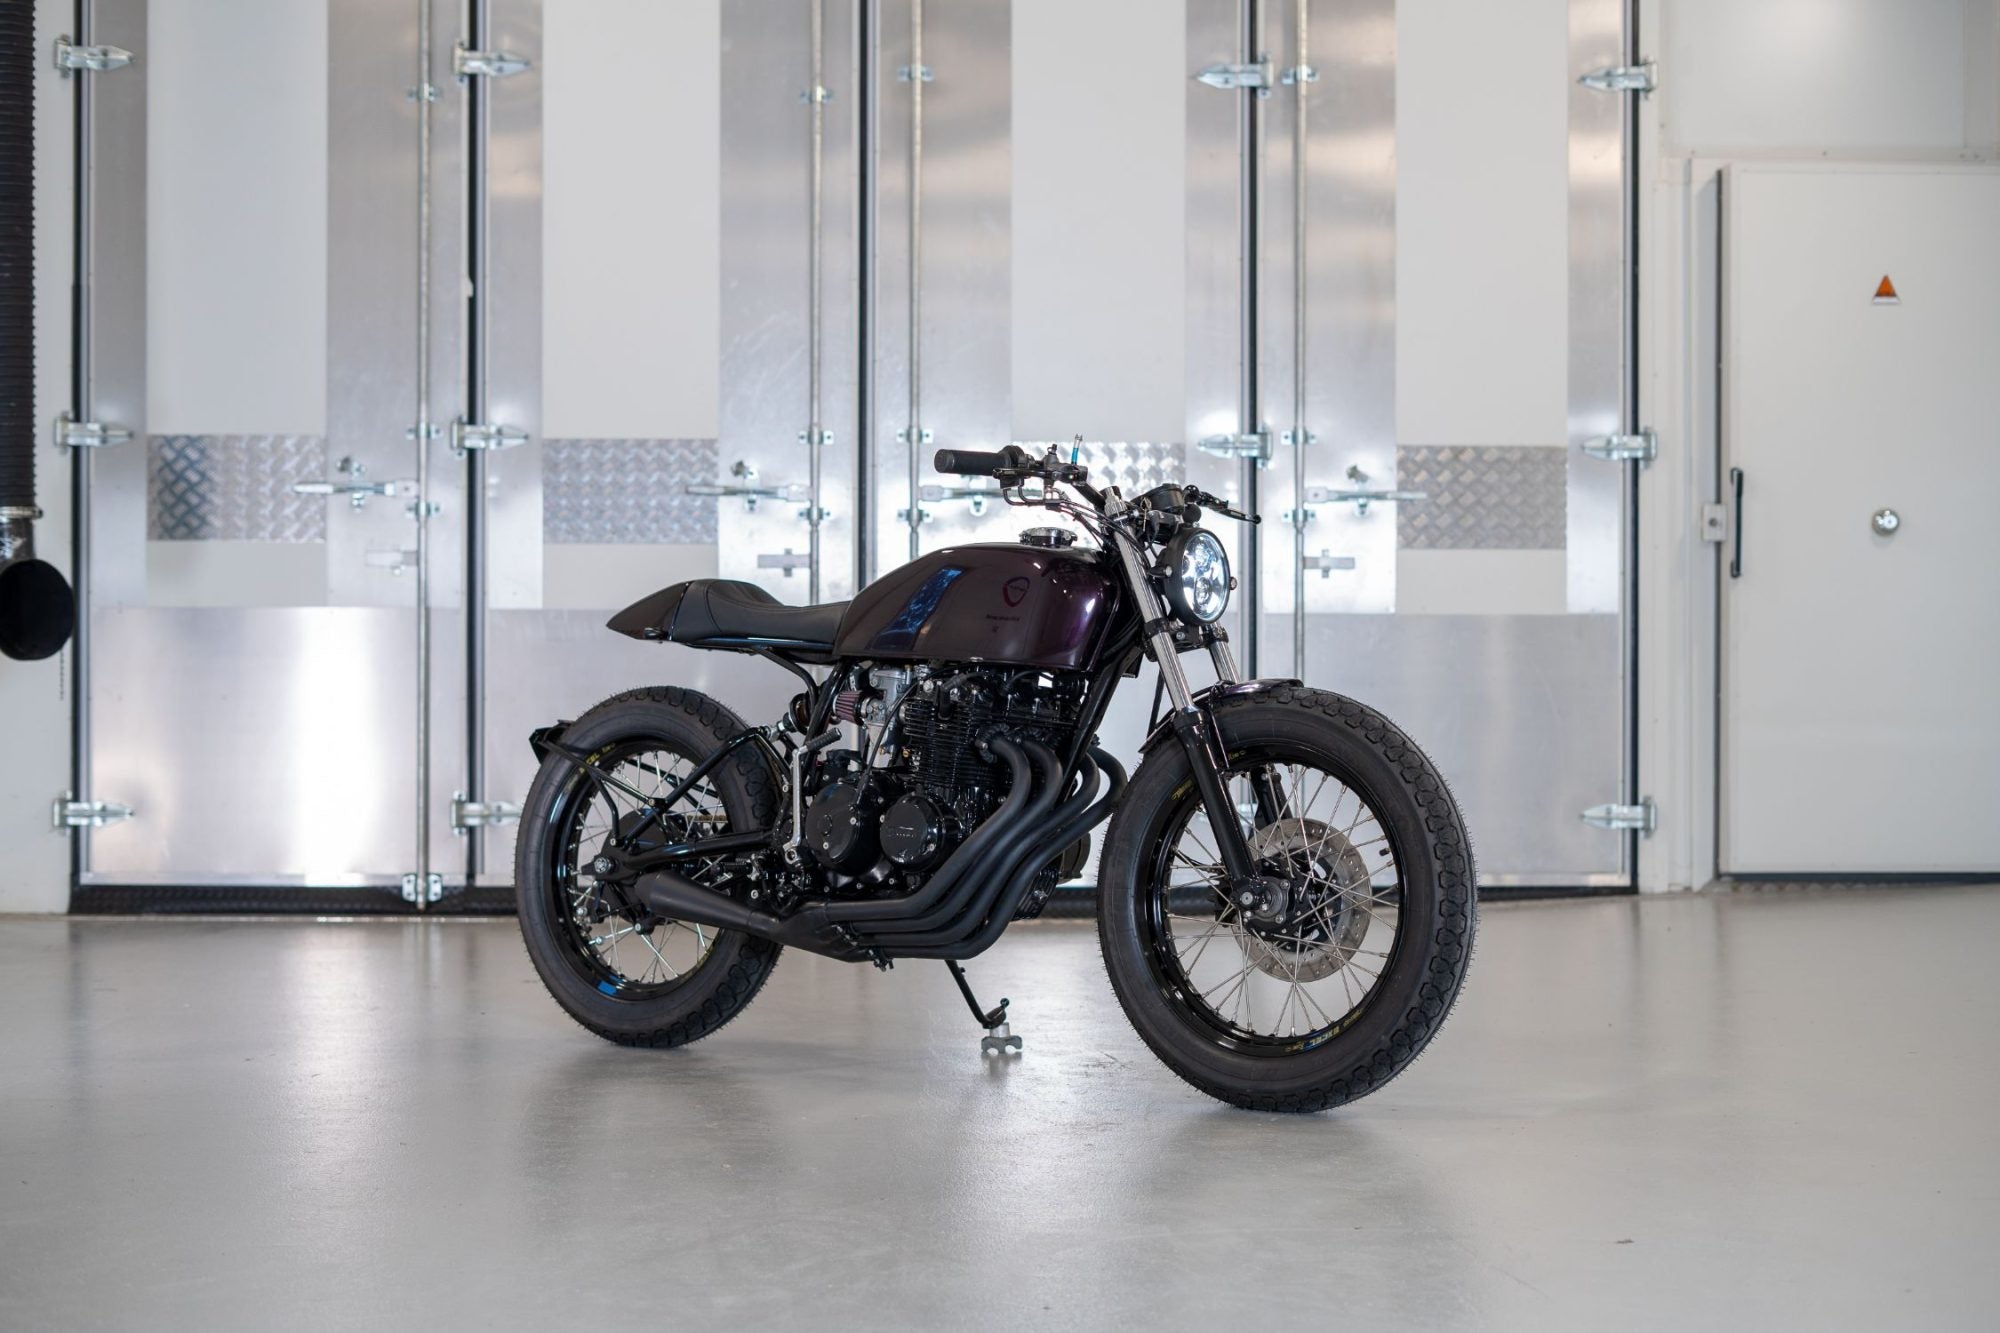 Honda CB400 Four Café Racer – Purpose Built Moto